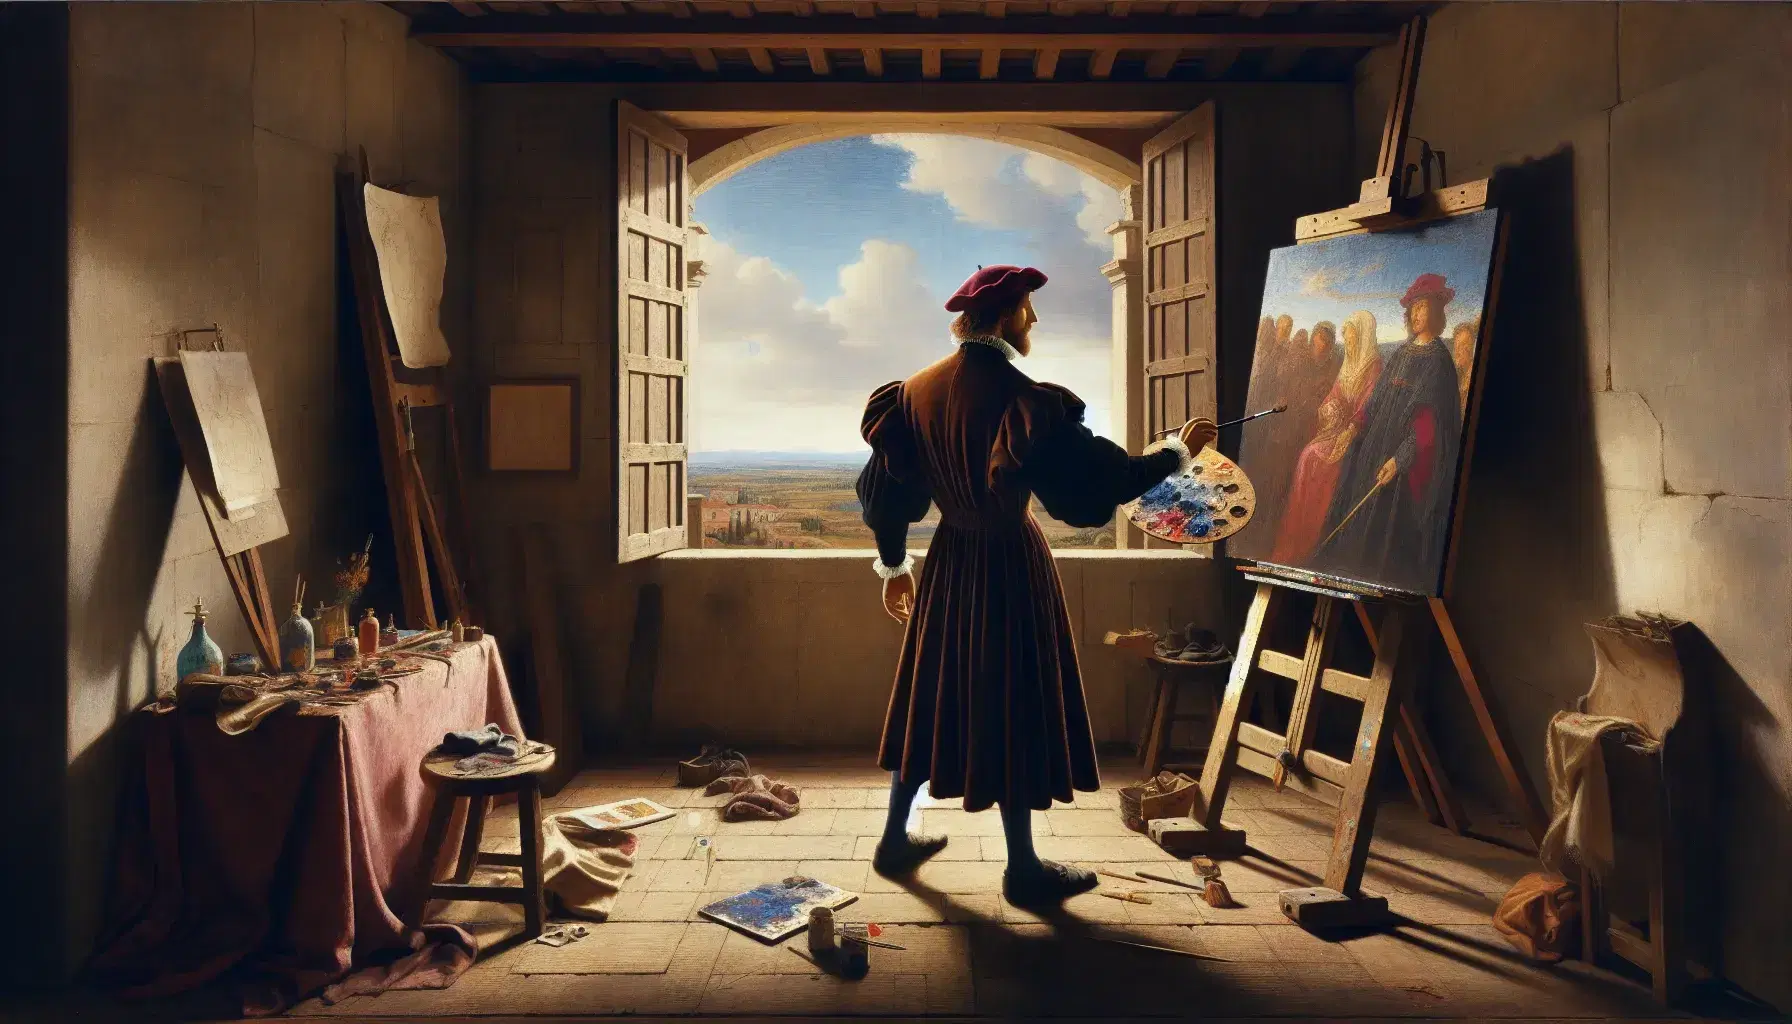 Artista renacentista pintando en su estudio con luz natural, paleta de colores en mano, frente a un caballete y ventana con vista a edificios históricos.